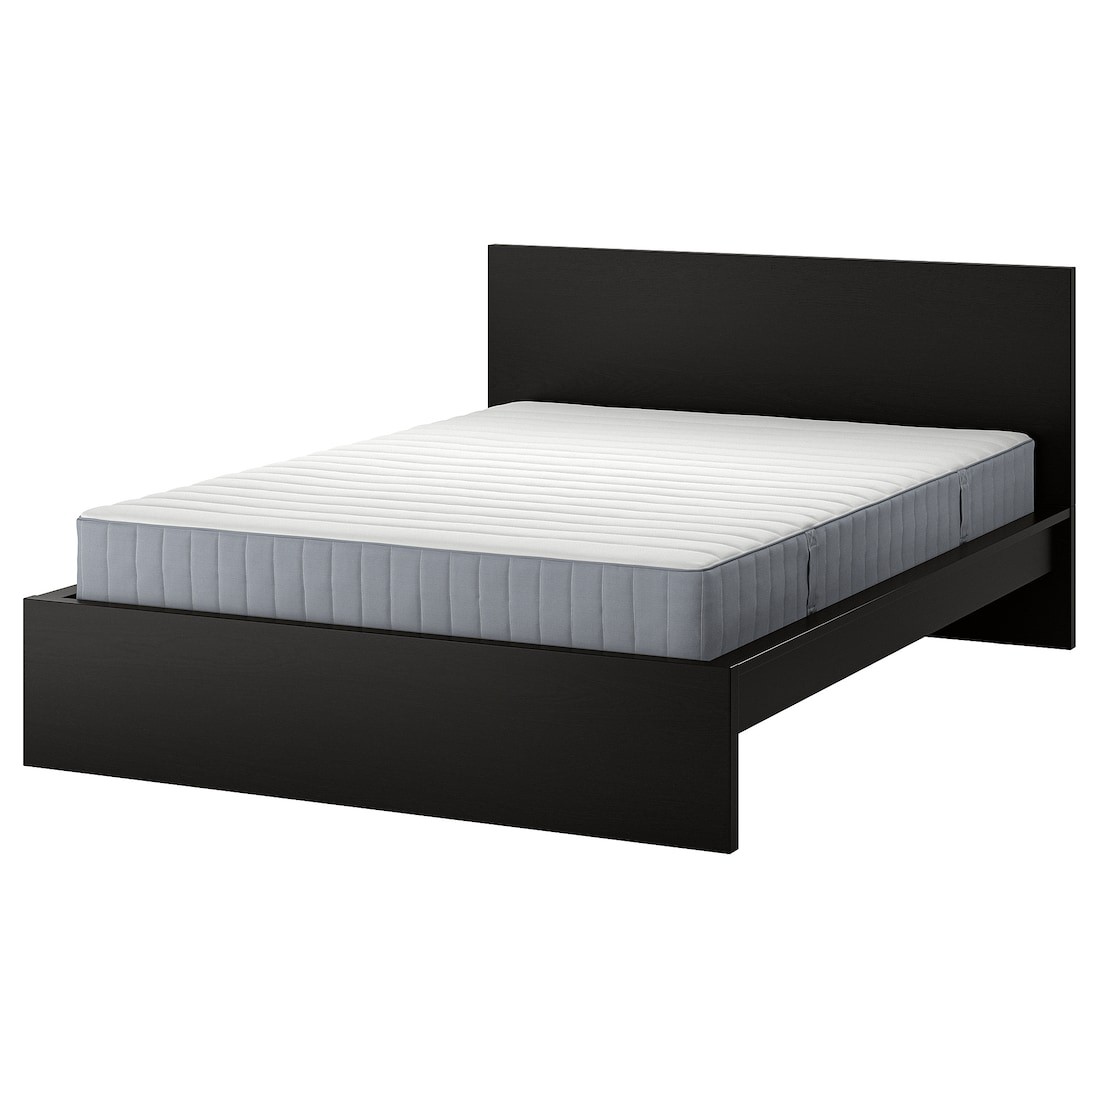 MALM Кровать с матрасом, черно-коричневый / Valevåg жесткий, 160x200 см